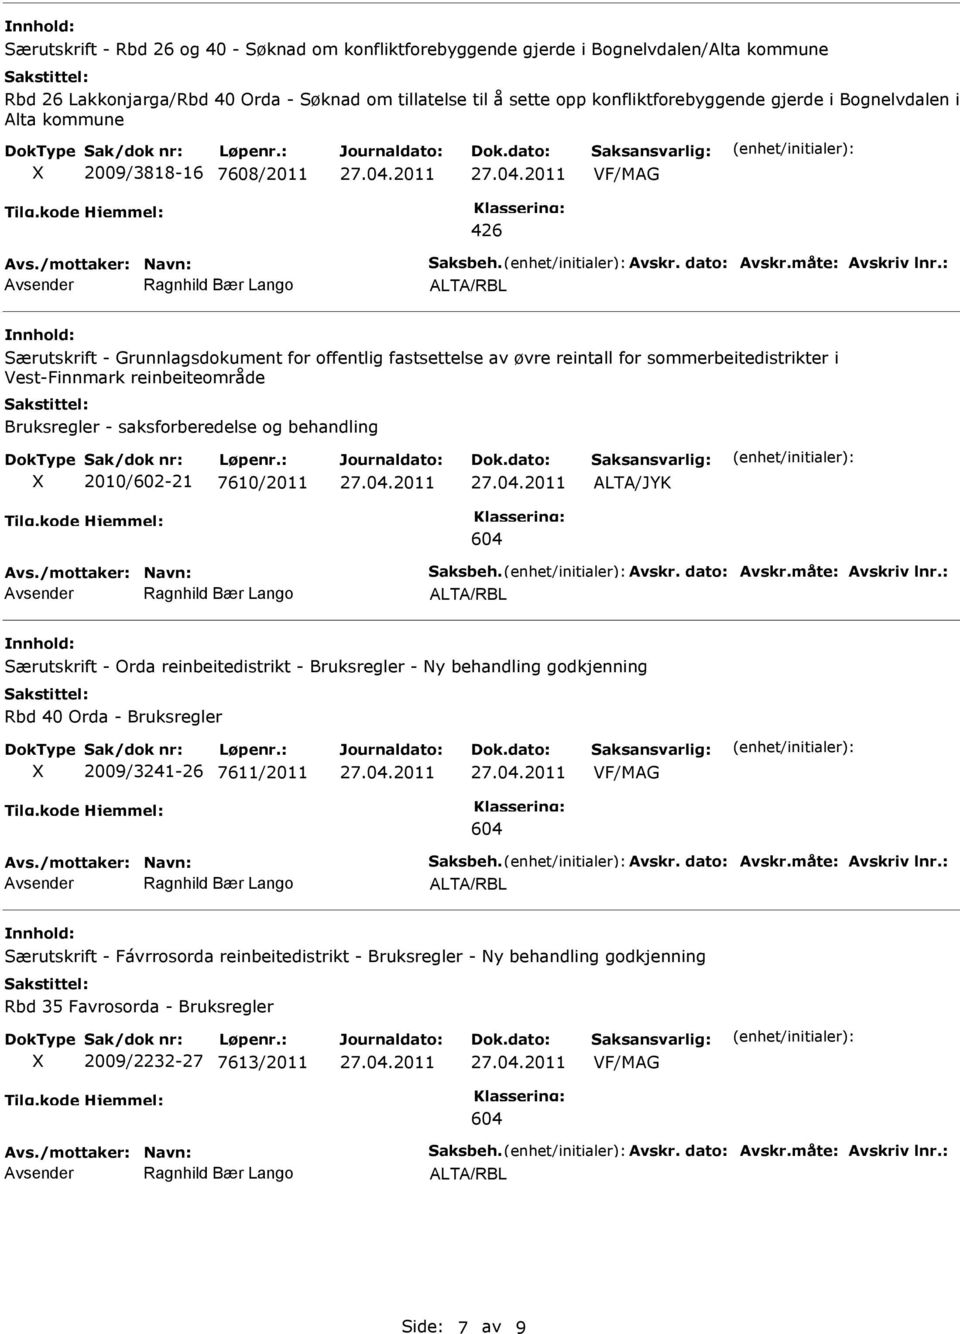 : Særutskrift - Grunnlagsdokument for offentlig fastsettelse av øvre reintall for sommerbeitedistrikter i Vest-Finnmark reinbeiteområde Bruksregler - saksforberedelse og behandling 2010/602-21